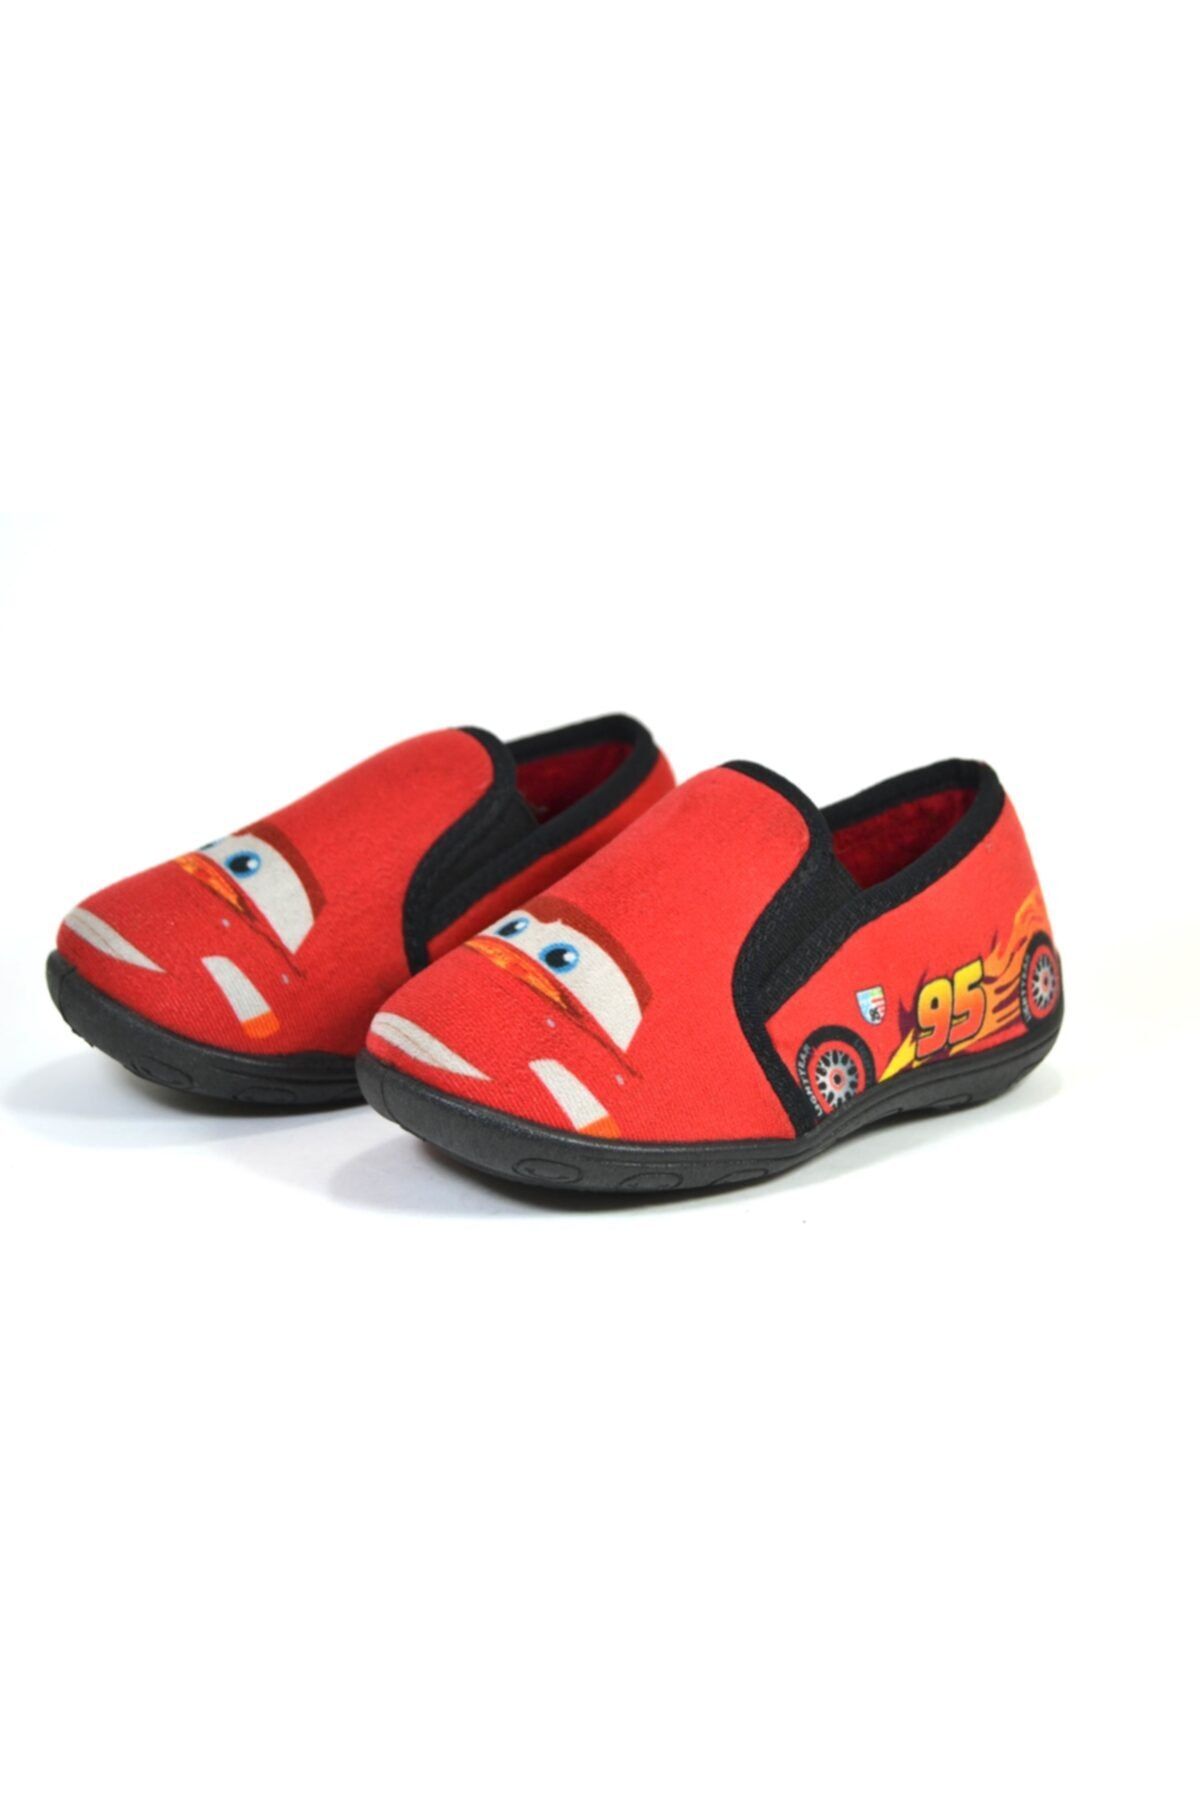 Gigi Kırmızı Erkek Çocuk Panduf Ev Kreş Anaokulu Ayakkabı